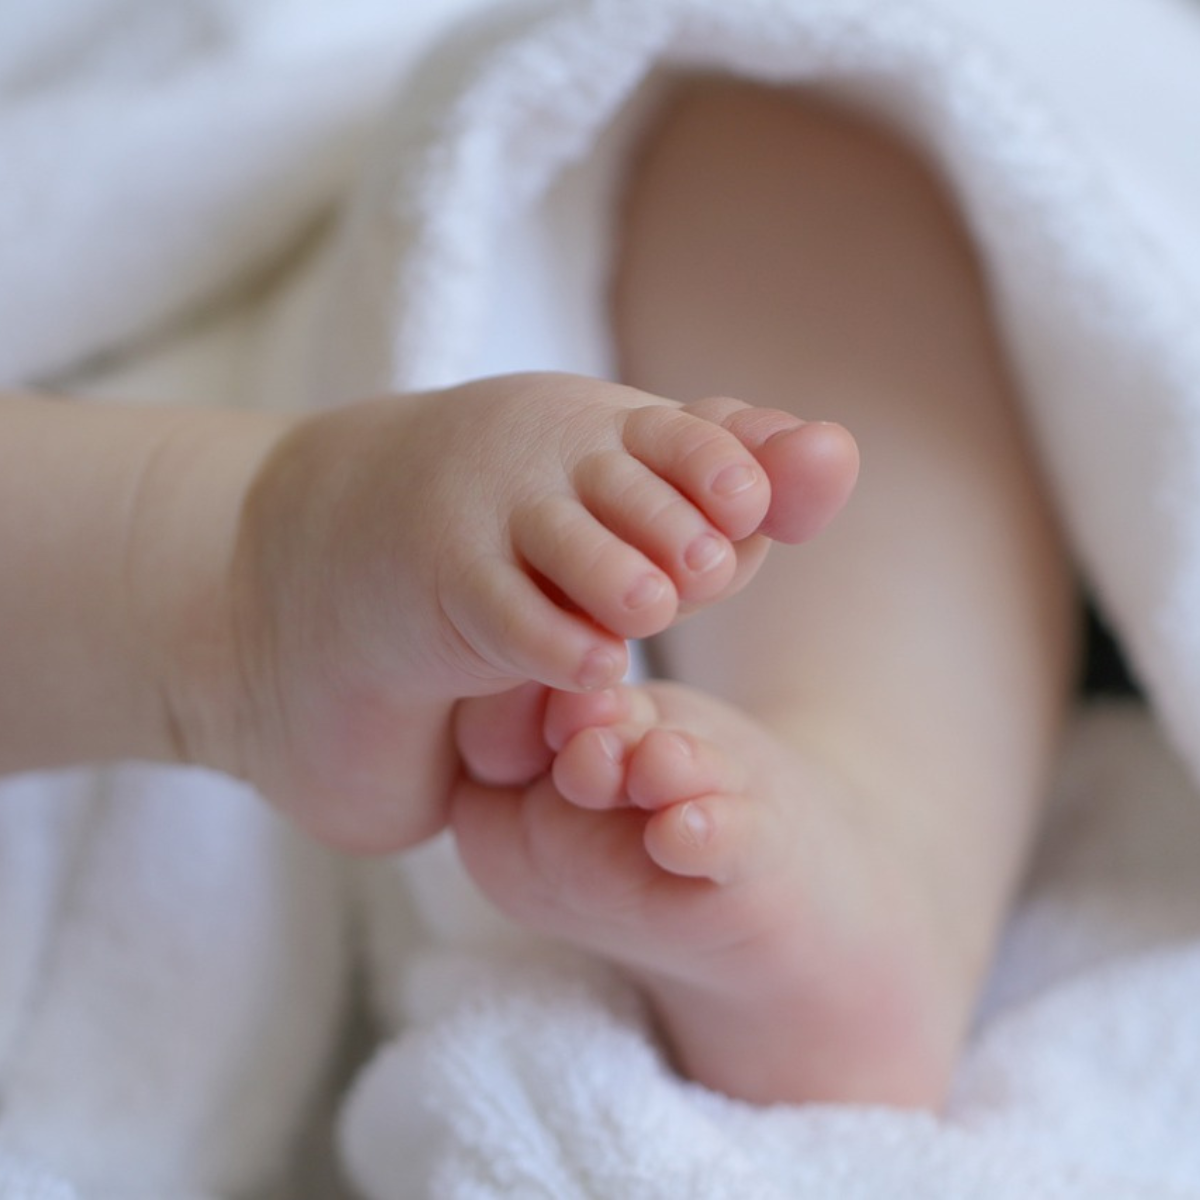  Bebê de 1 ano morre ao se engasgar com leite 